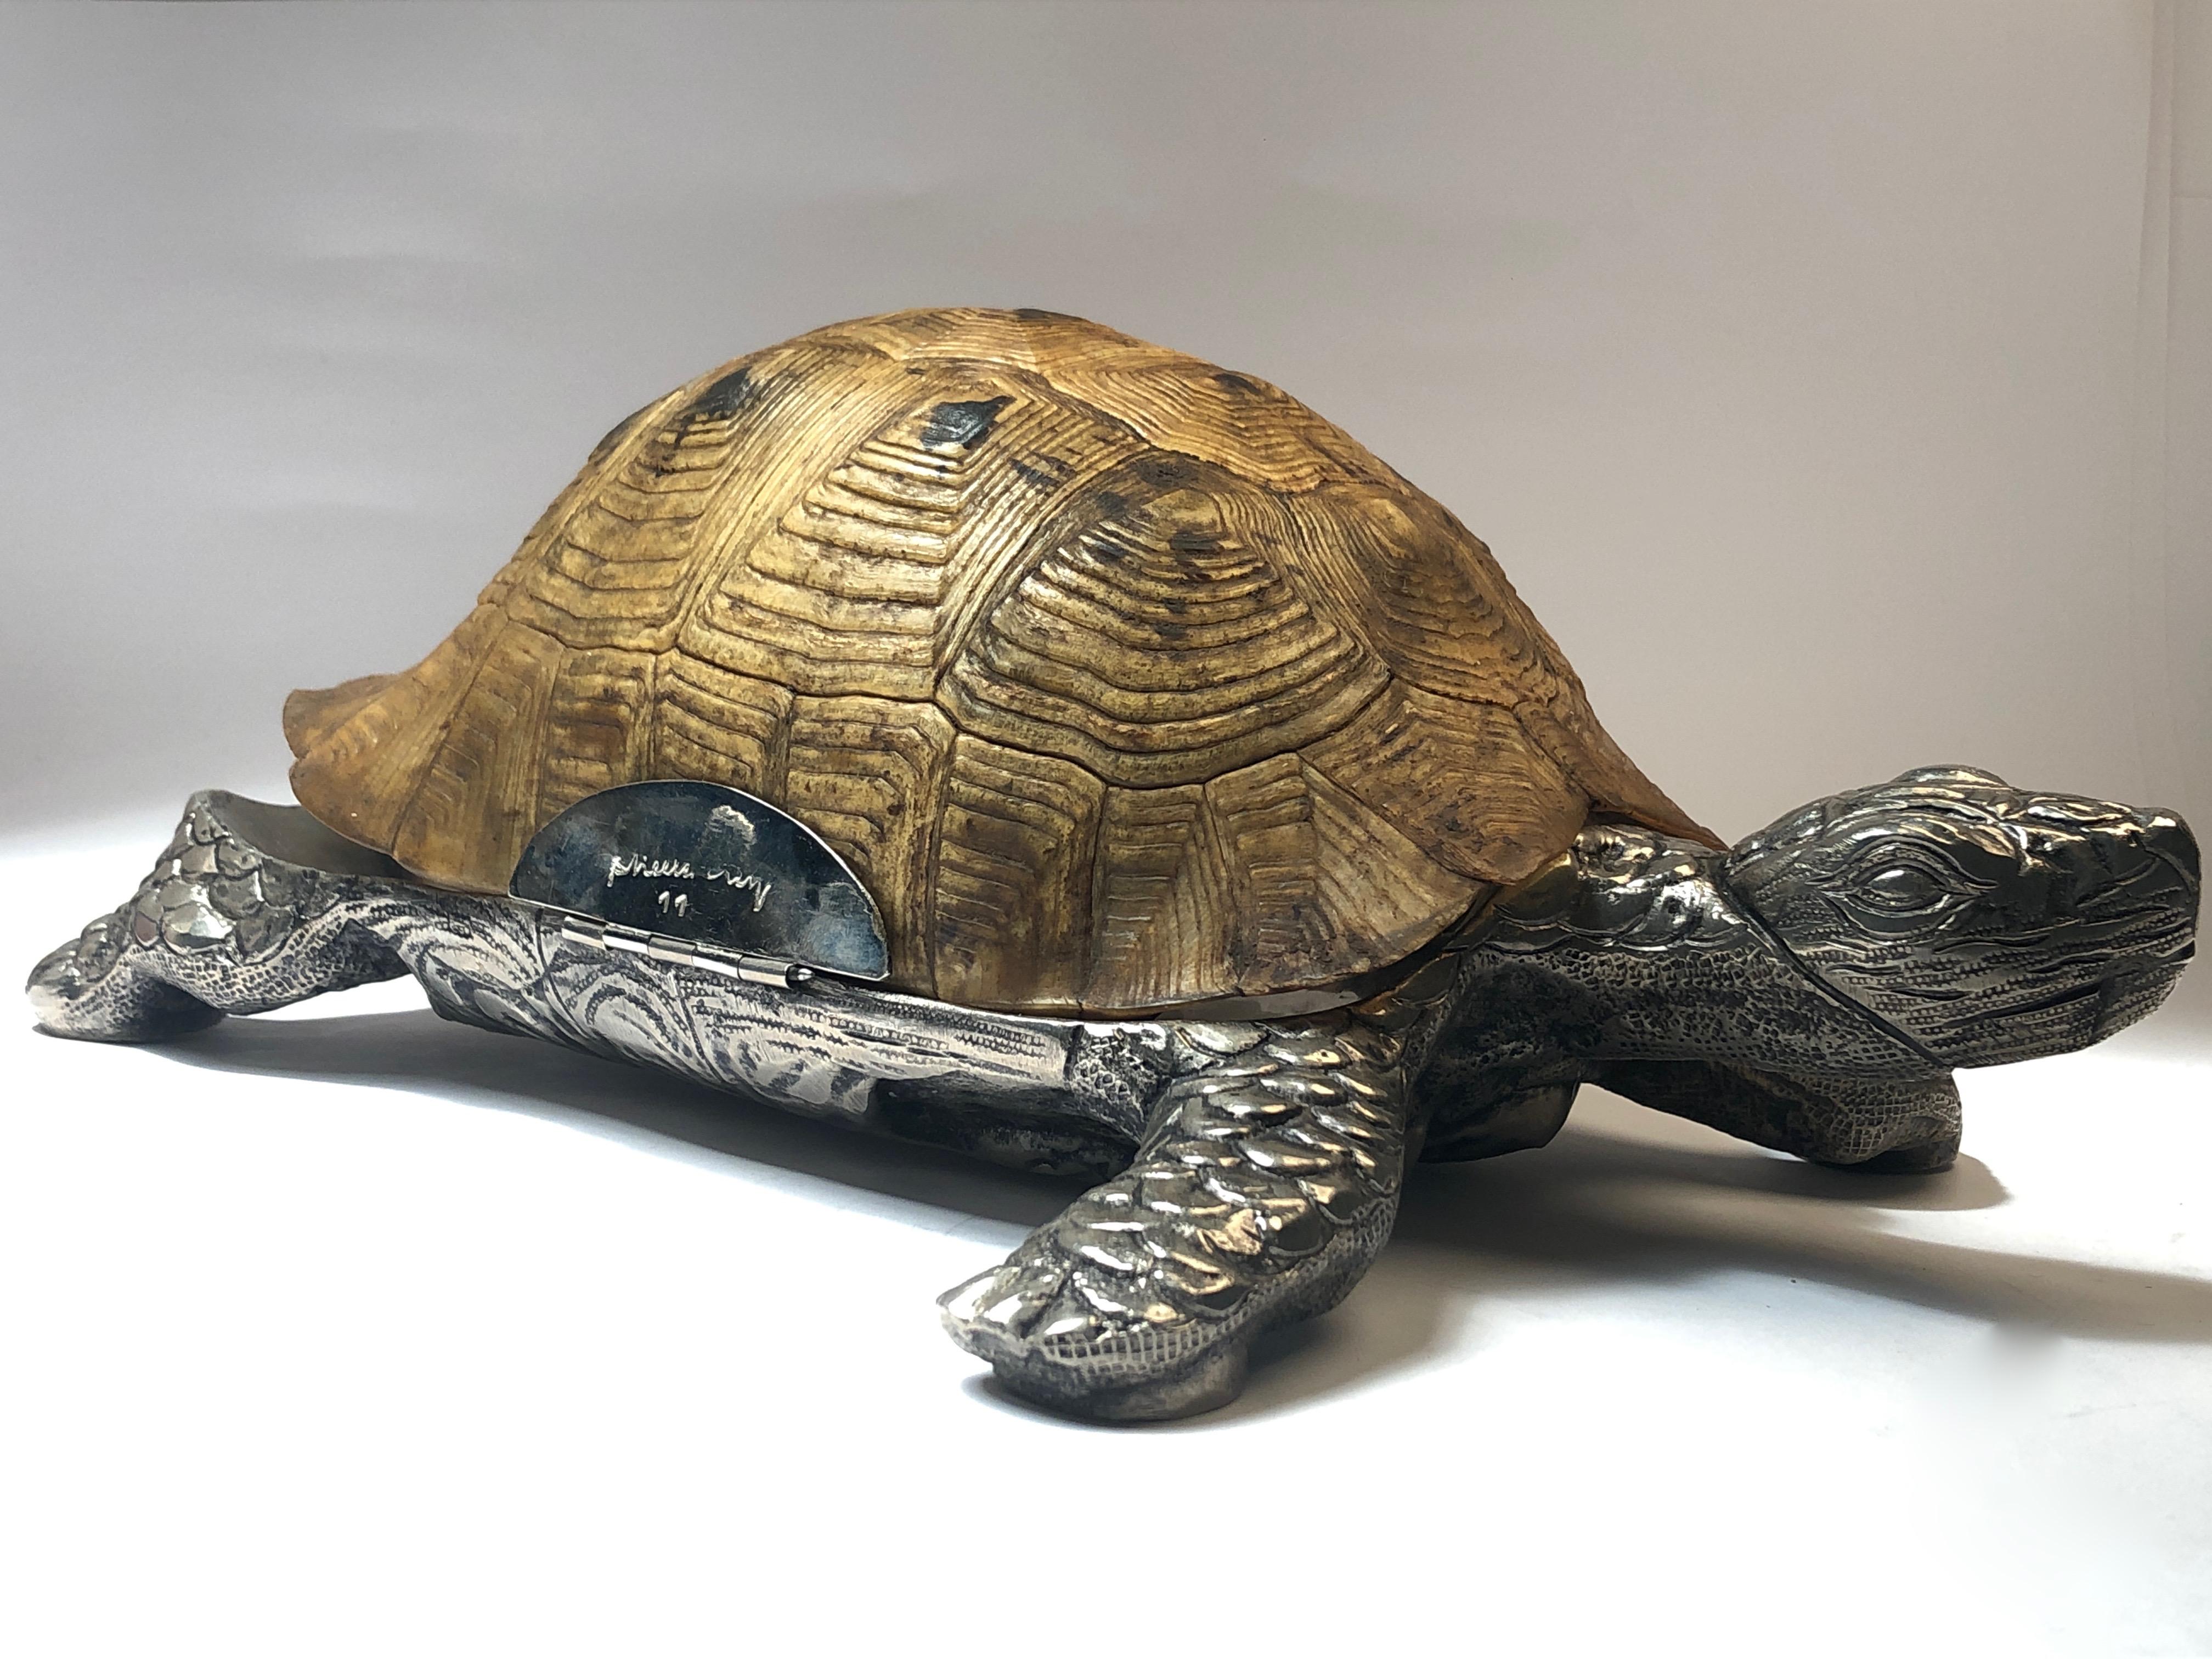 Seltene signierte Gabriella Crespi Große Skulptur einer echten Schildkrötenmuschel in Silber, 1970 (Italienisch)